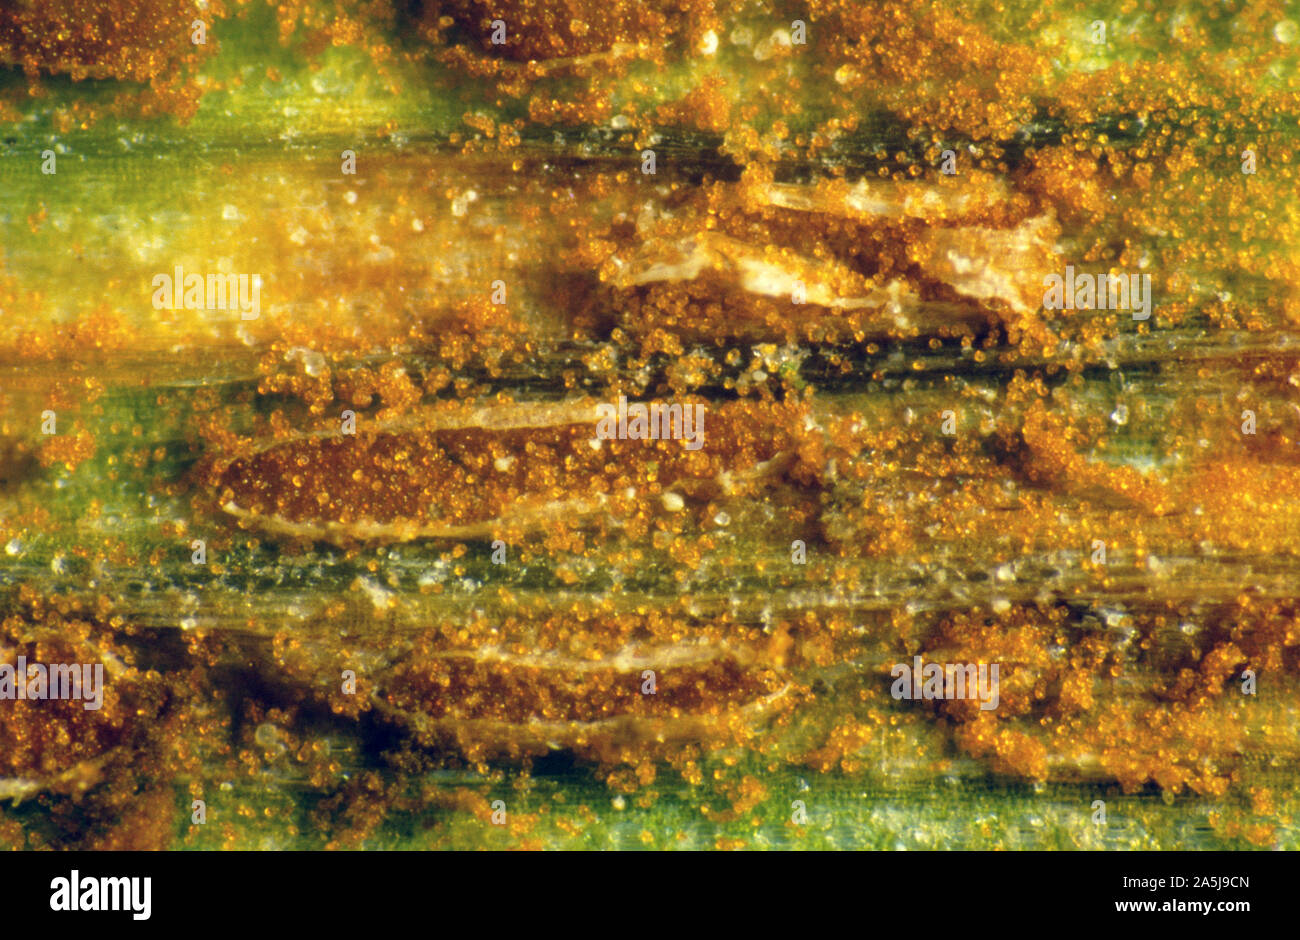 Weizen blatt Rost oder braunrost (Puccinia triticina) ausbrechenden Blatt Pusteln auf Weizen loslassen Sporen von pilzerkrankung Stockfoto